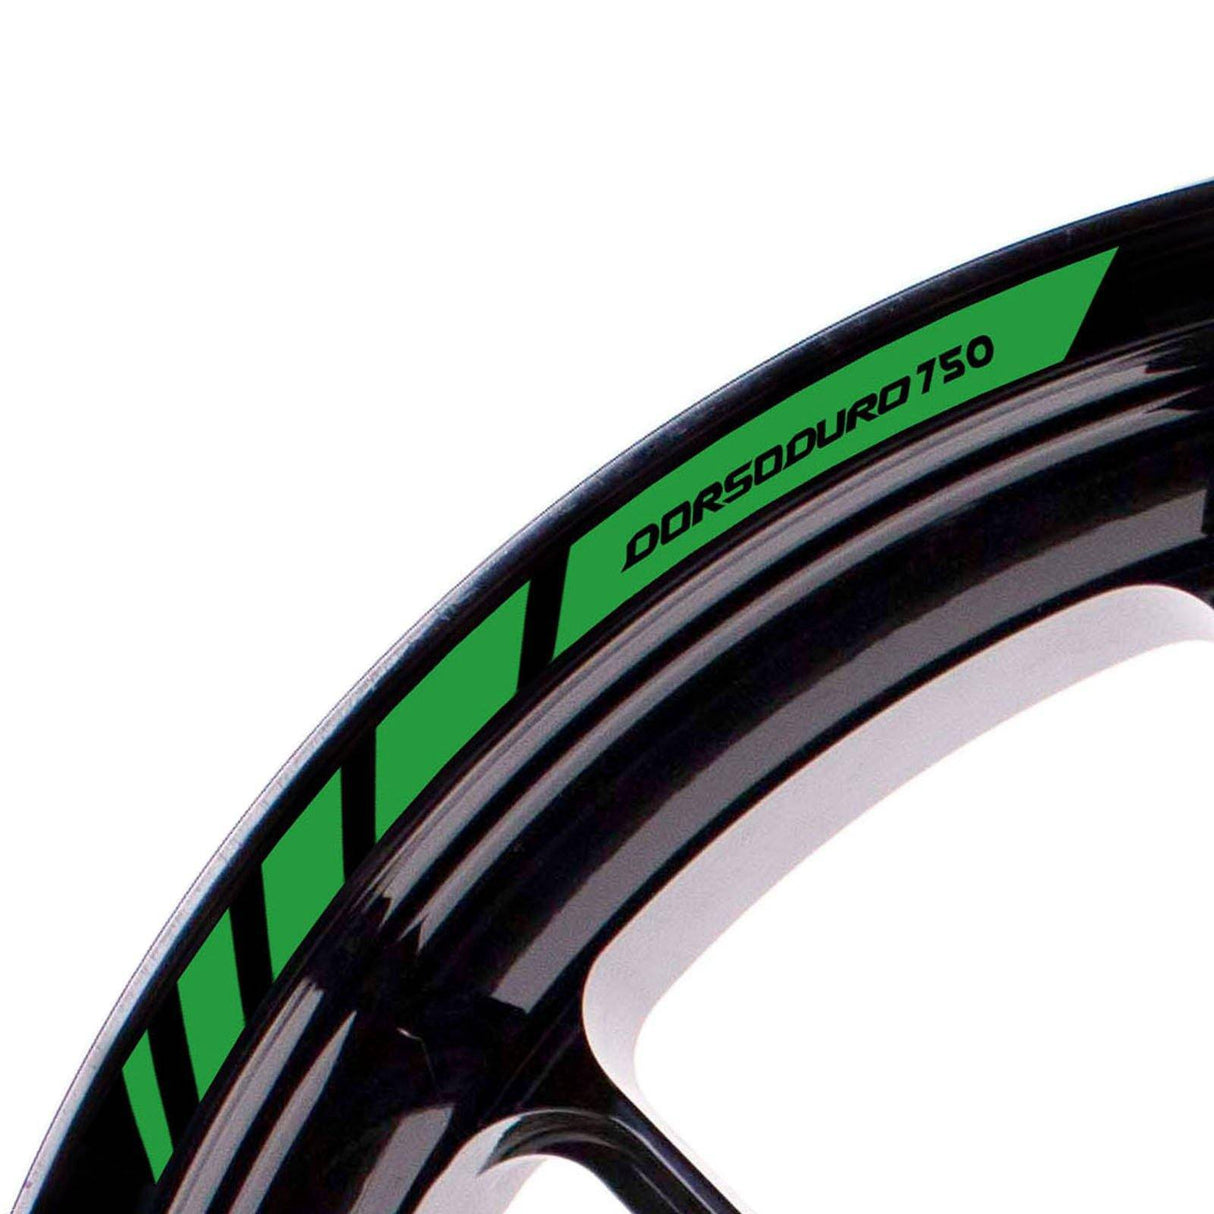 For Aprilia Dorsoduro 750 Logo 17 inch Rim Wheel Stickers MM01B Rim Edge Tapes.